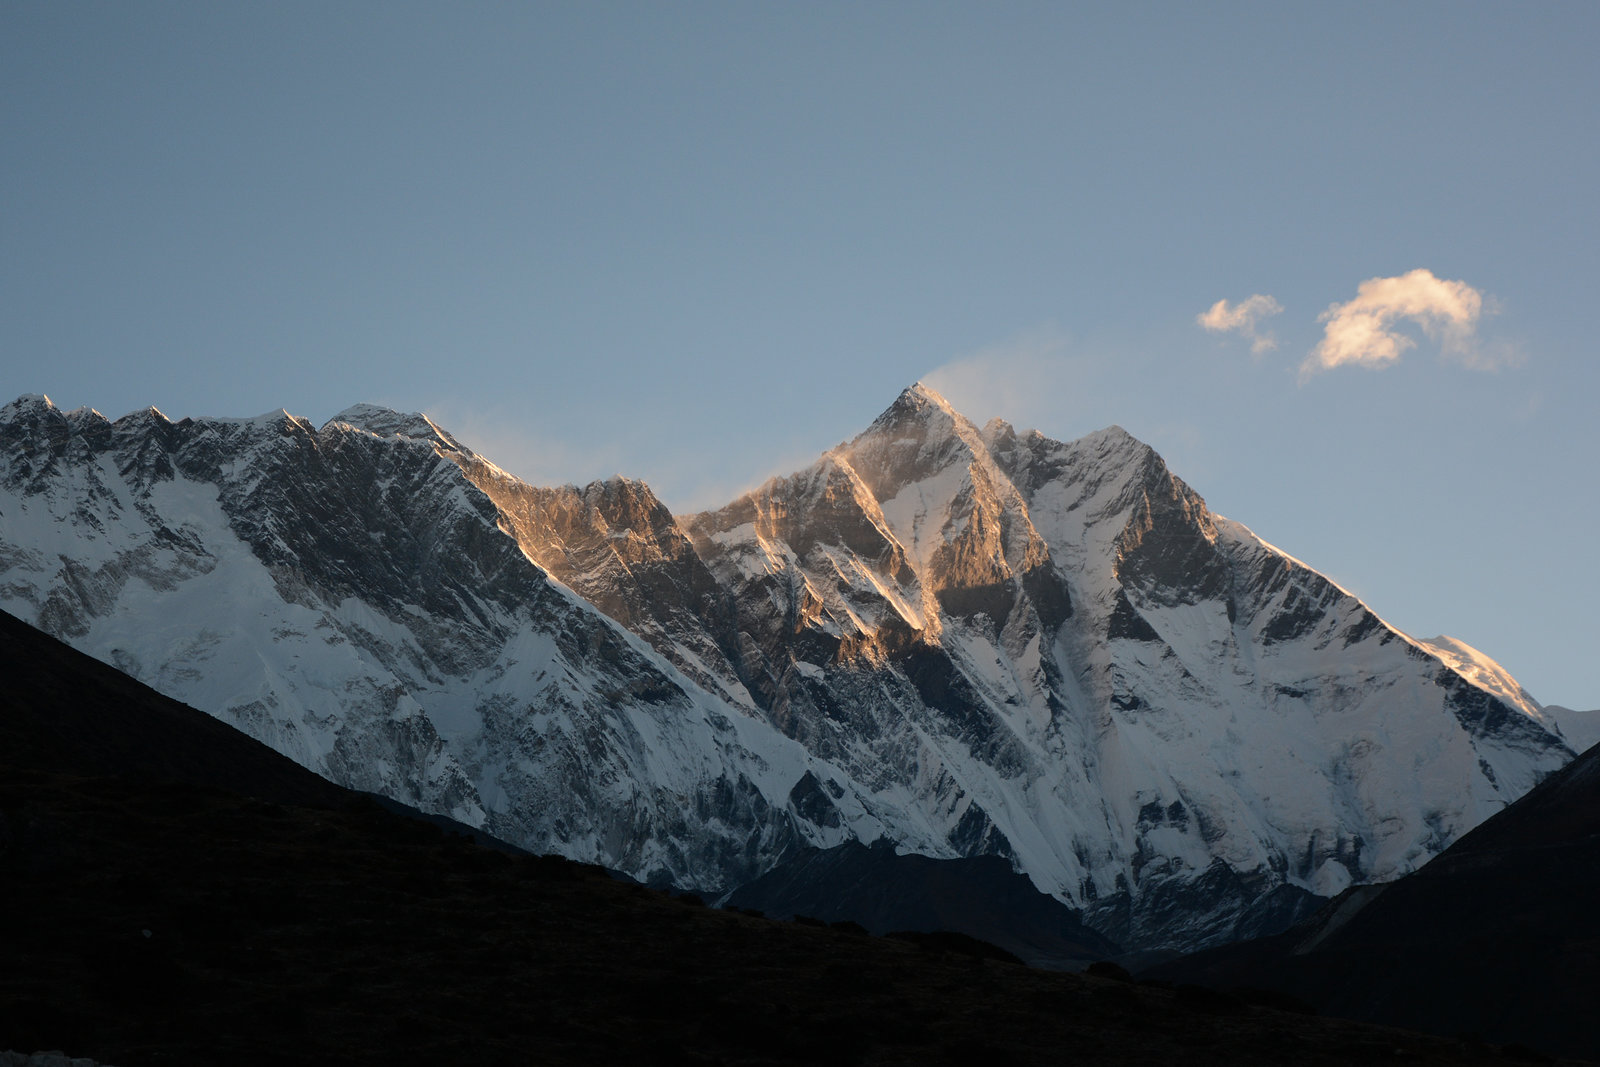 Sunrise over the Himalayas, Everest (8848m) and Lhotse (8516m)